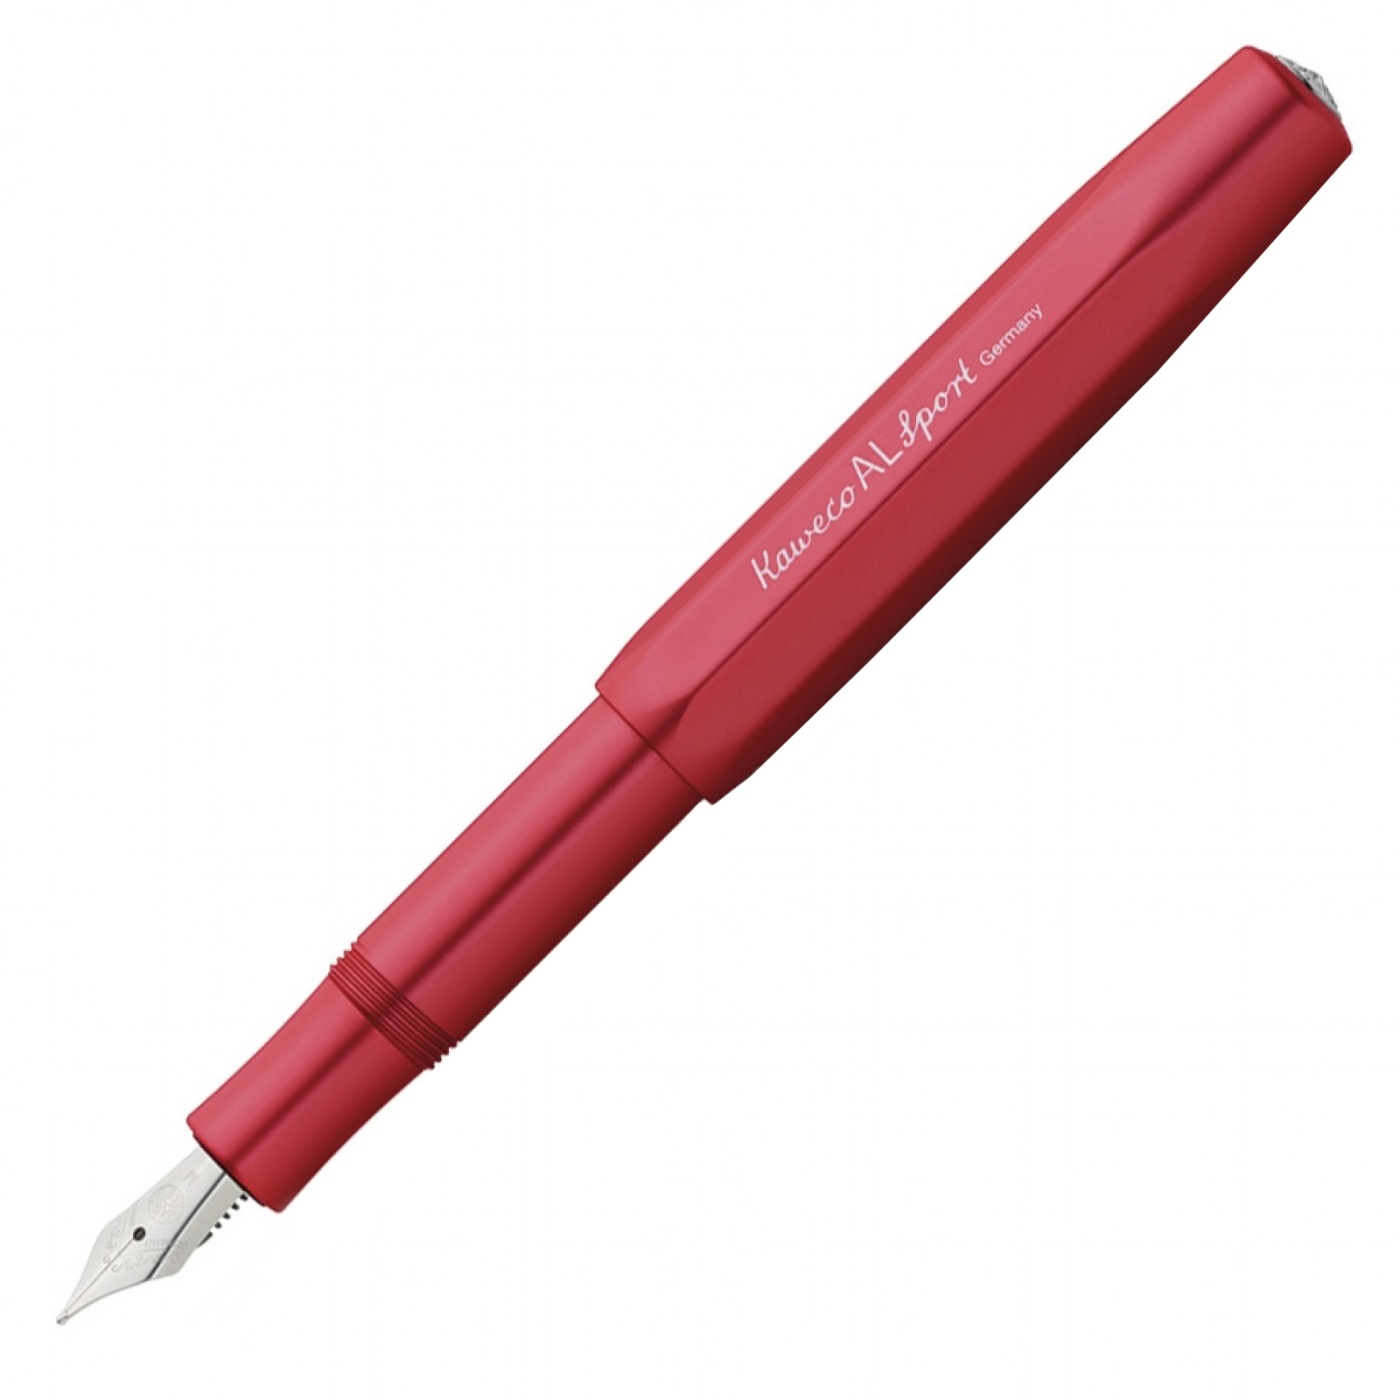 AL Sport Deep Red Füllfederhalter in der Gruppe Stifte / Fine Writing / Füllfederhalter bei Pen Store (102232_r)